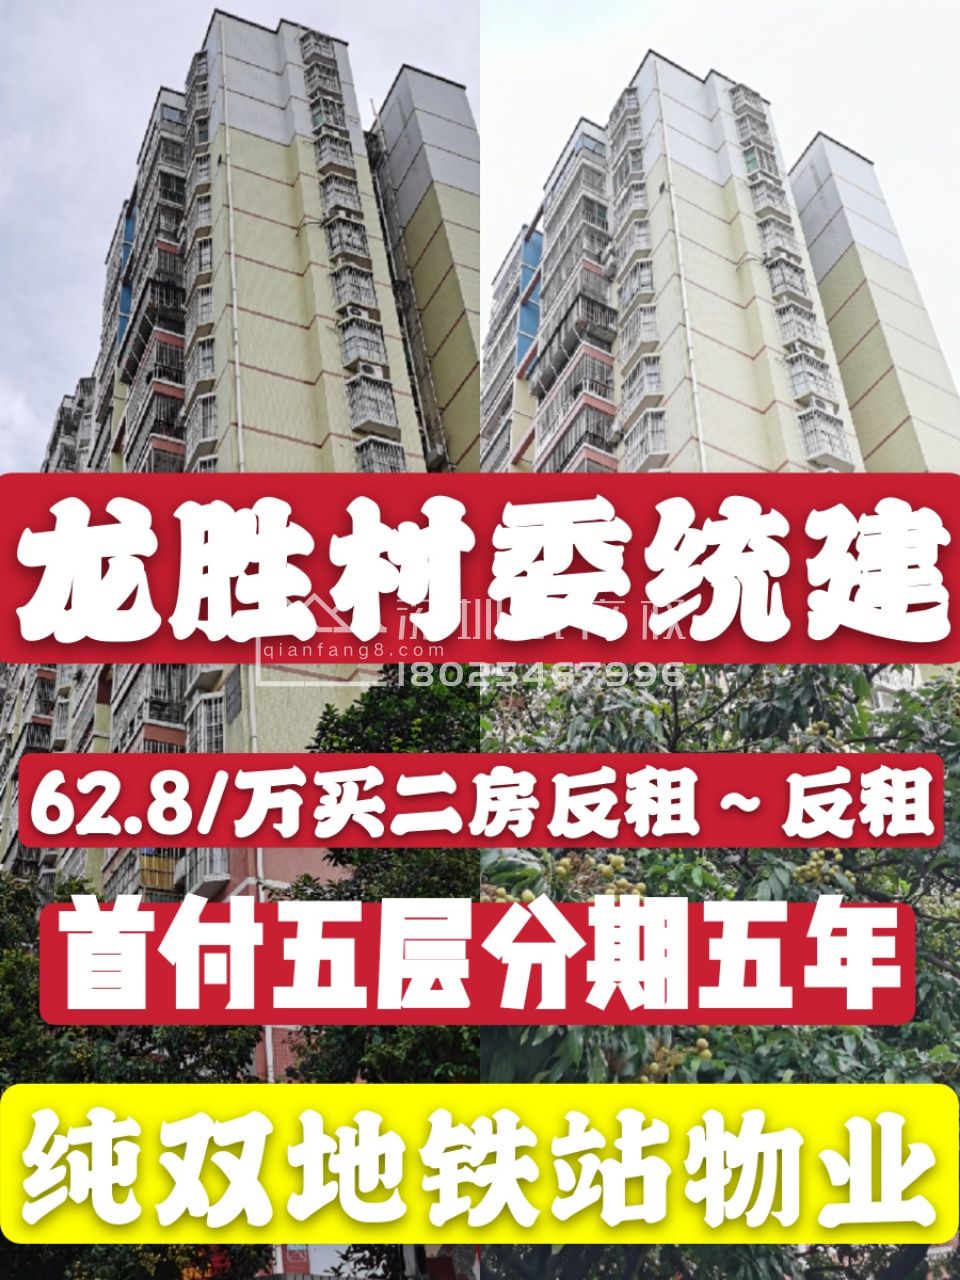 【龙胜村委统建楼】4栋联排 地铁口500米,精装2房78万起